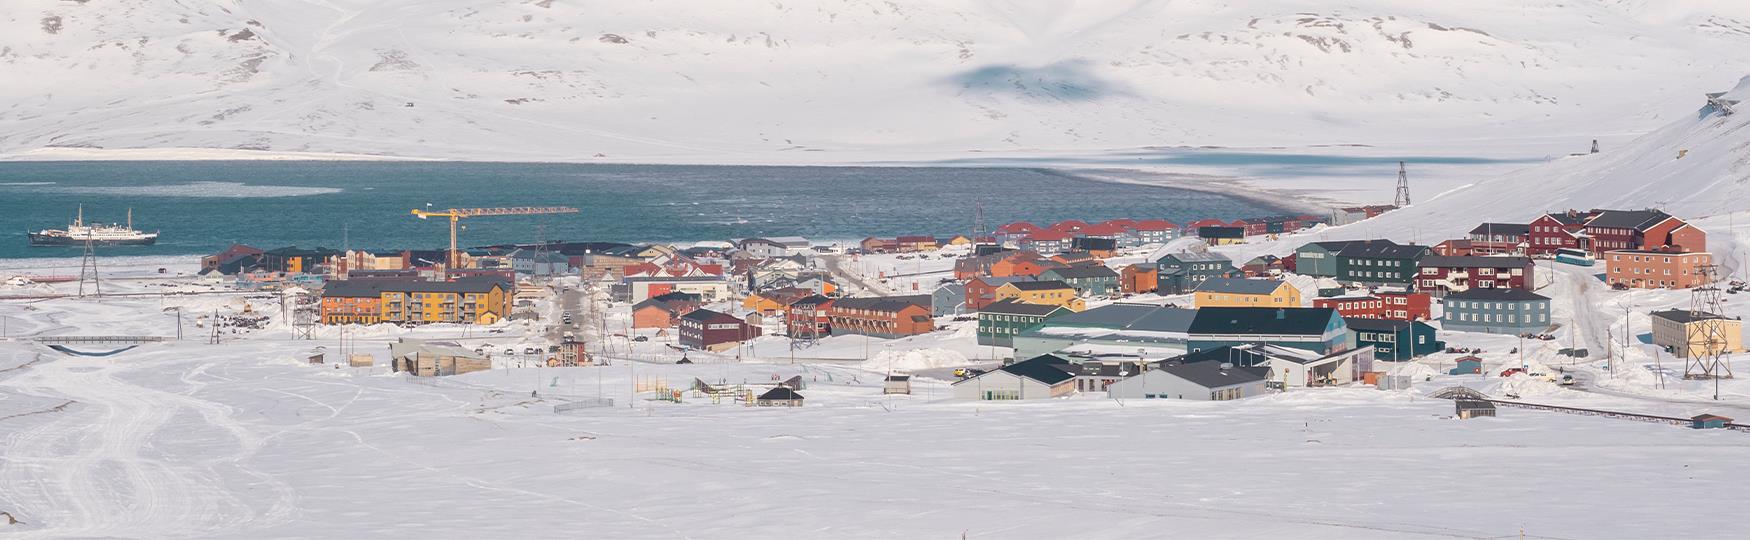 Bygninger i Longyearbyen omringet av et snødekt landskap